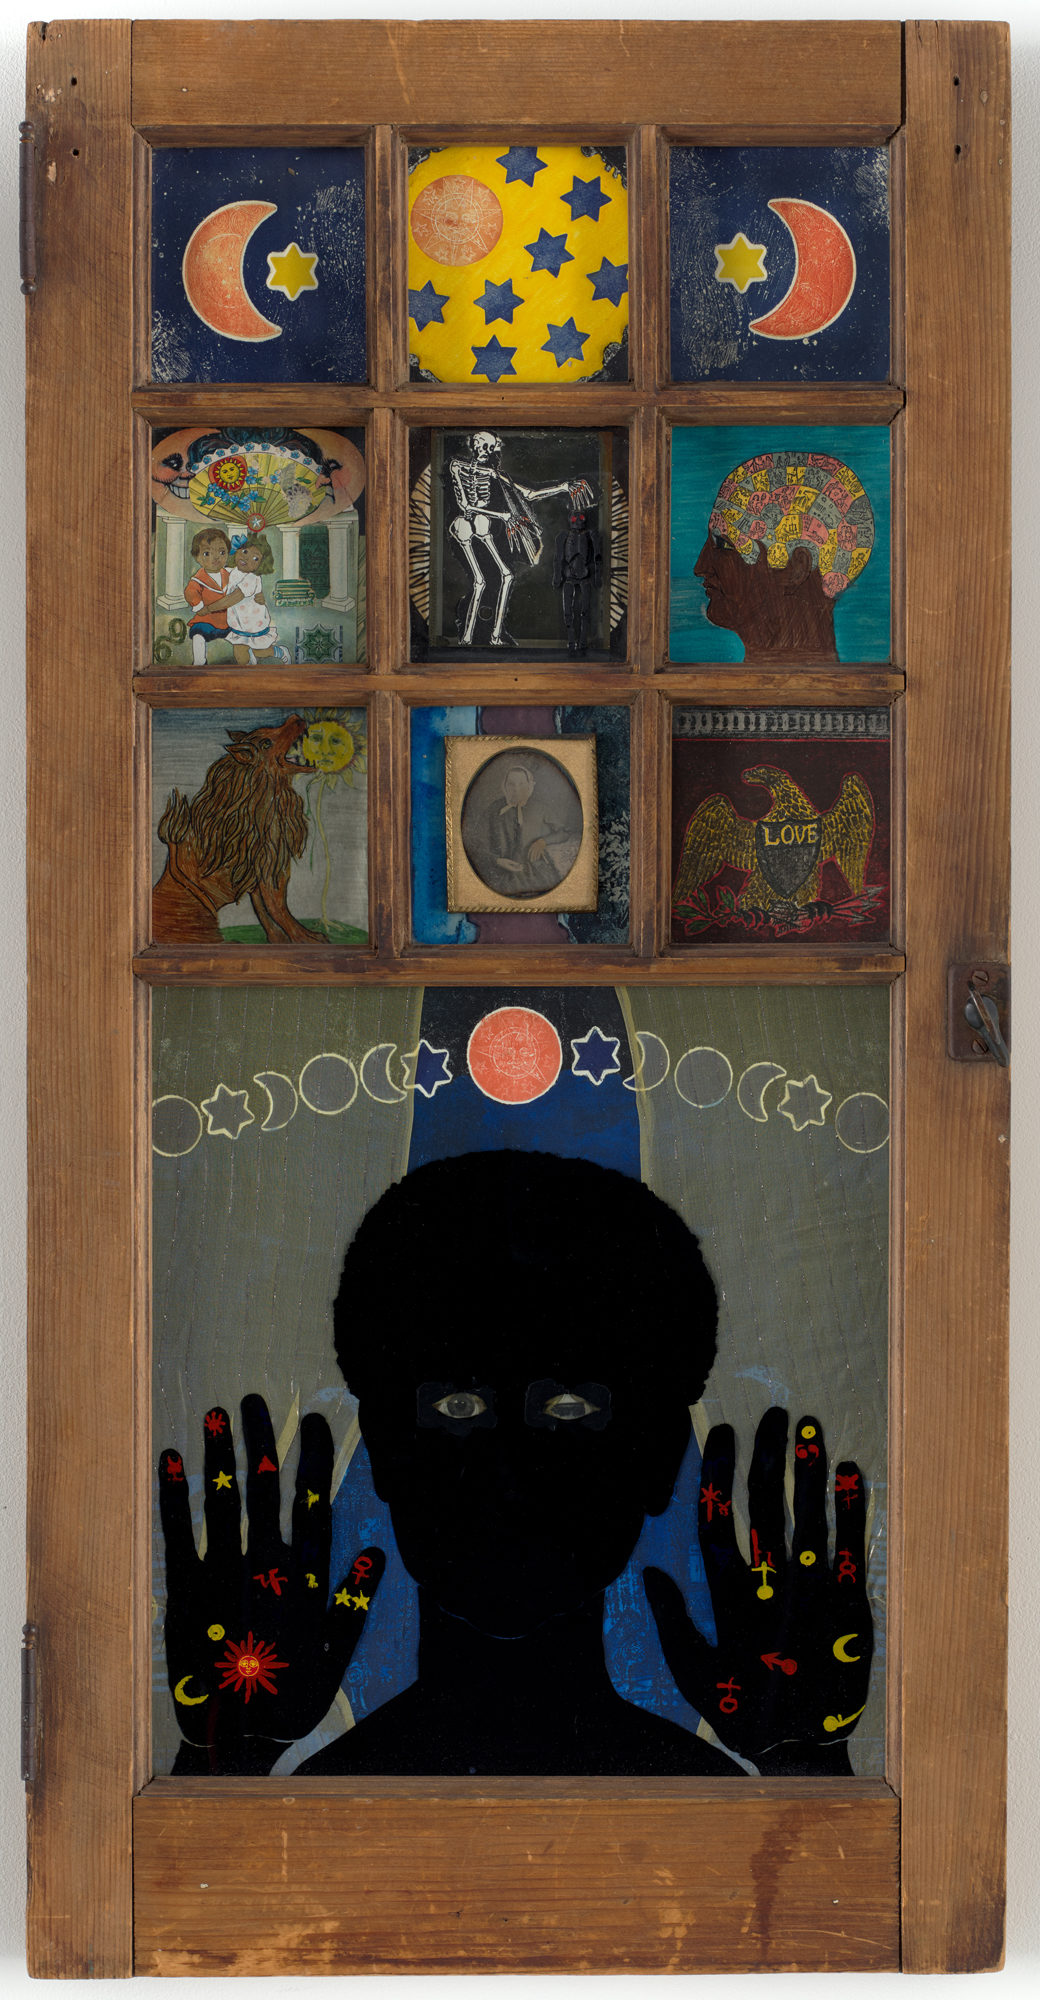 Betye Saar's Black Girl’s Window (1969). (Robert Gerhardt—Digital Image © 2018 MoMA, N.Y.)